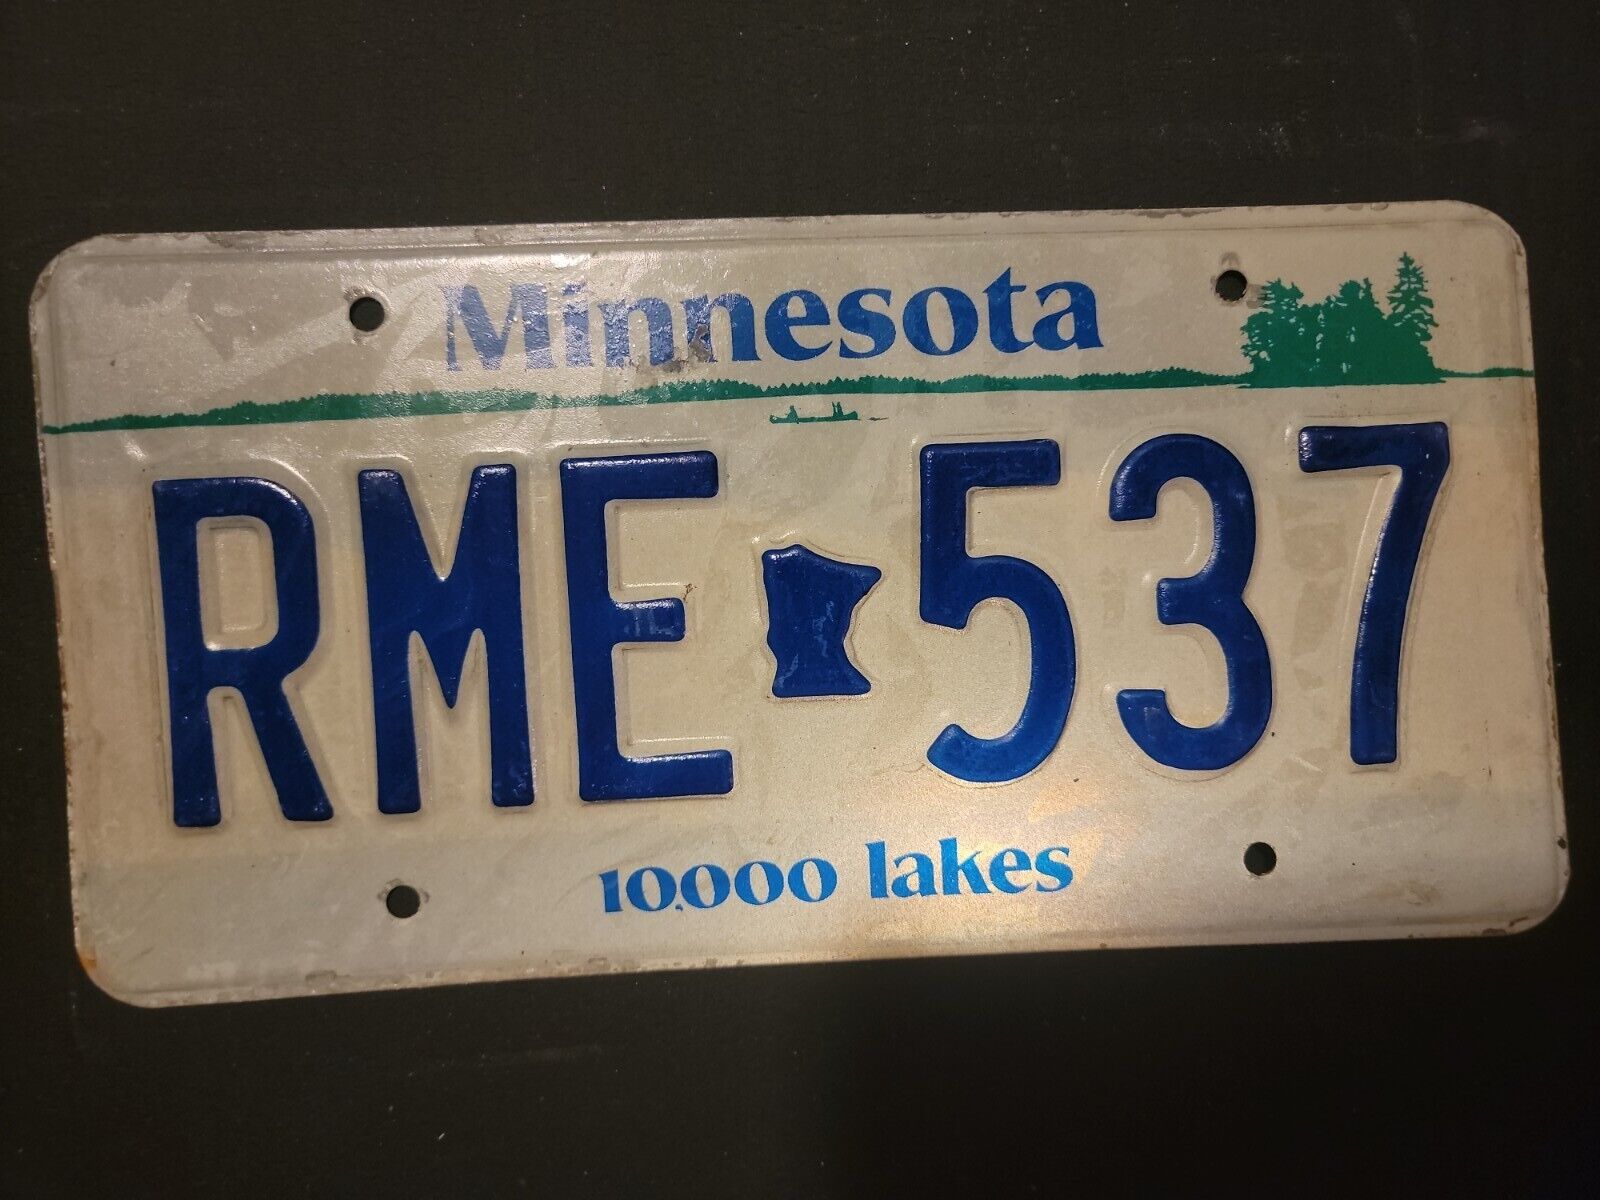 Vintage    MINNESOTA 10,000 LAKES License Plate RME - 537